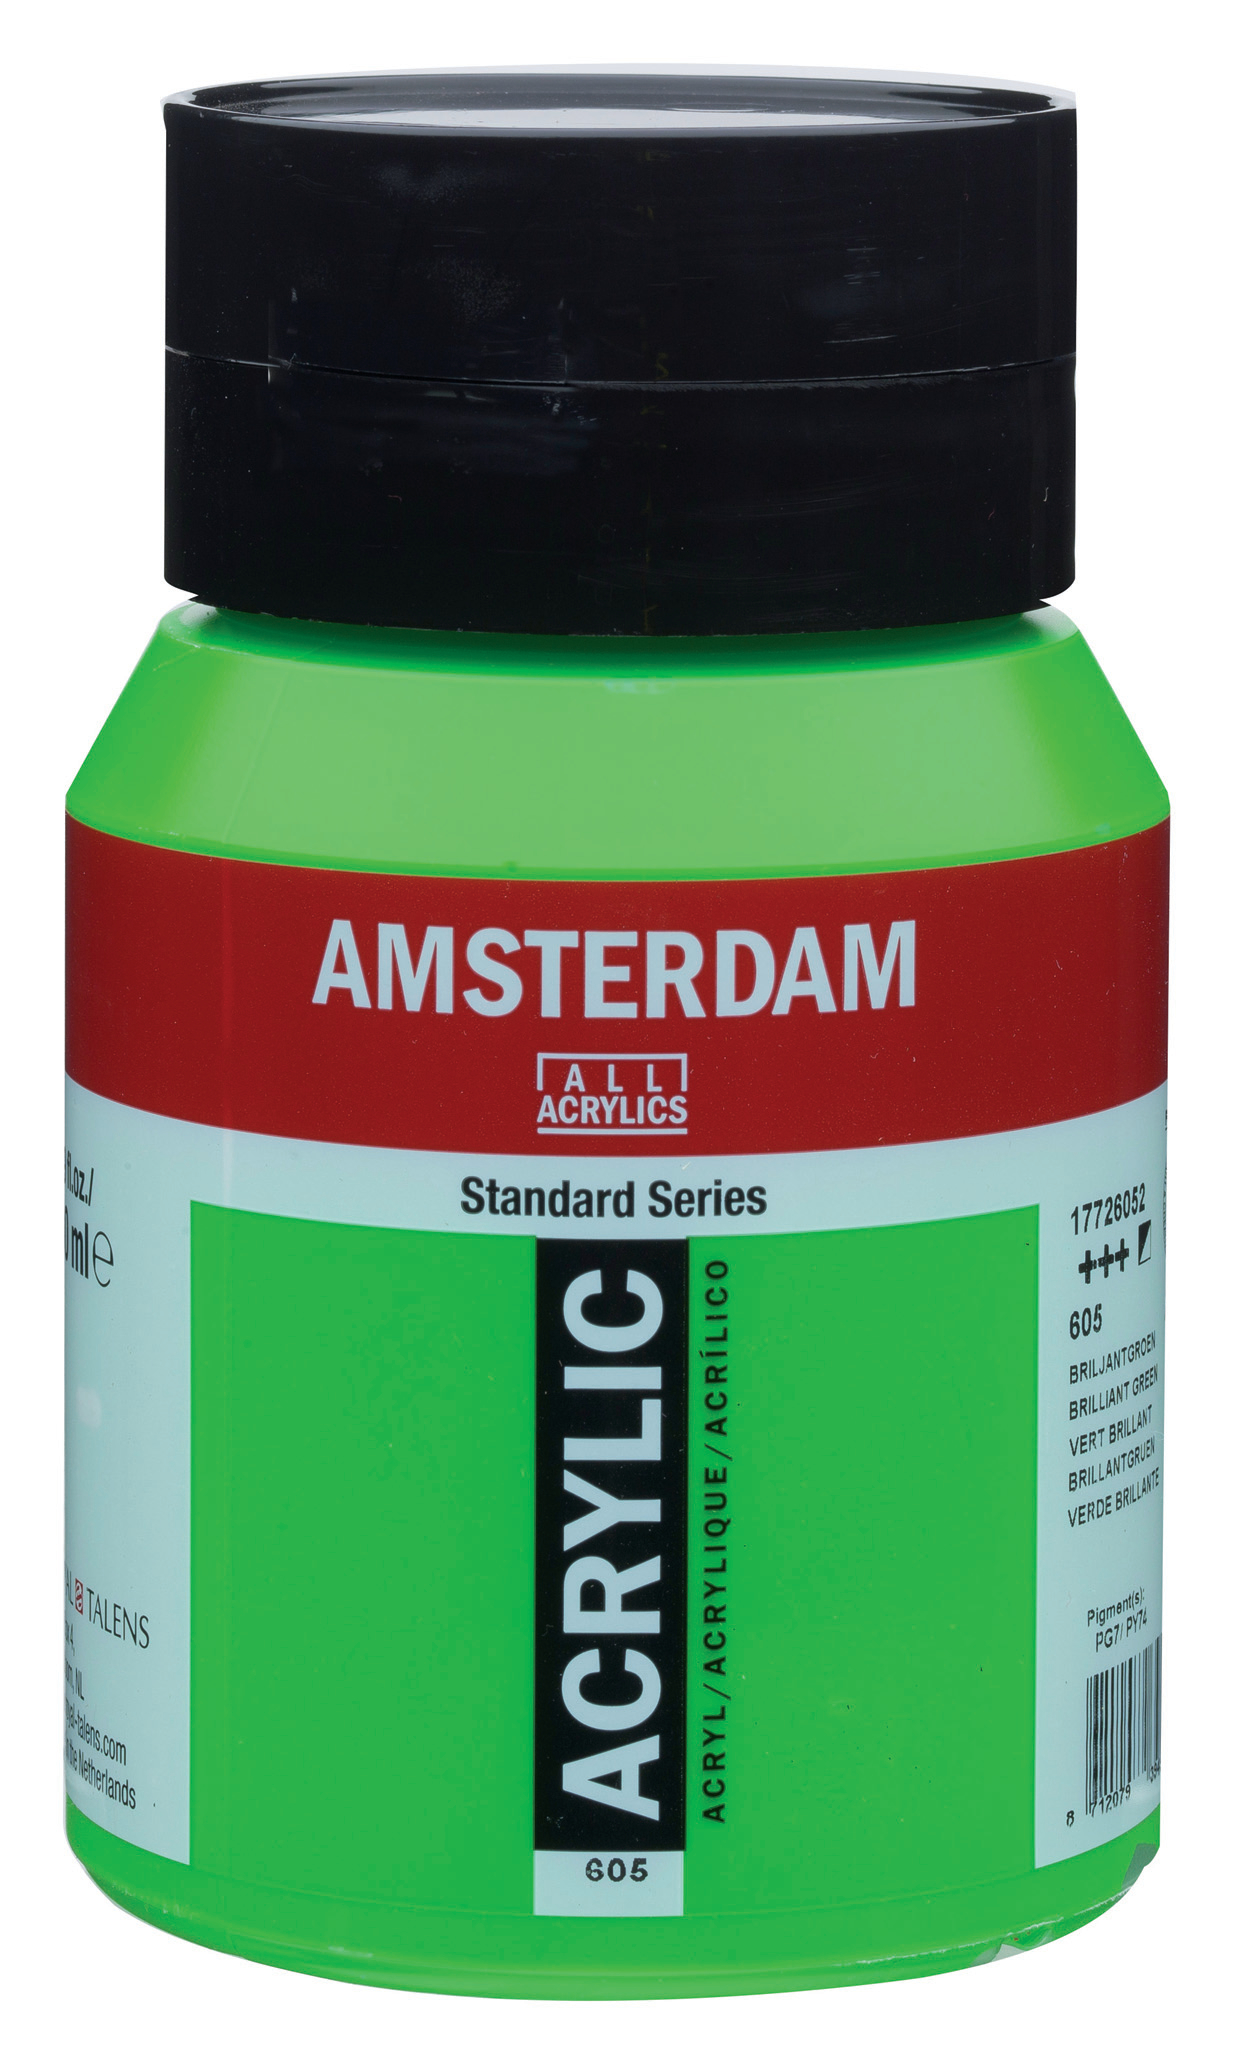 AMSTERDAM Peinture acrylique 500ml 17726052 vert brillant 605